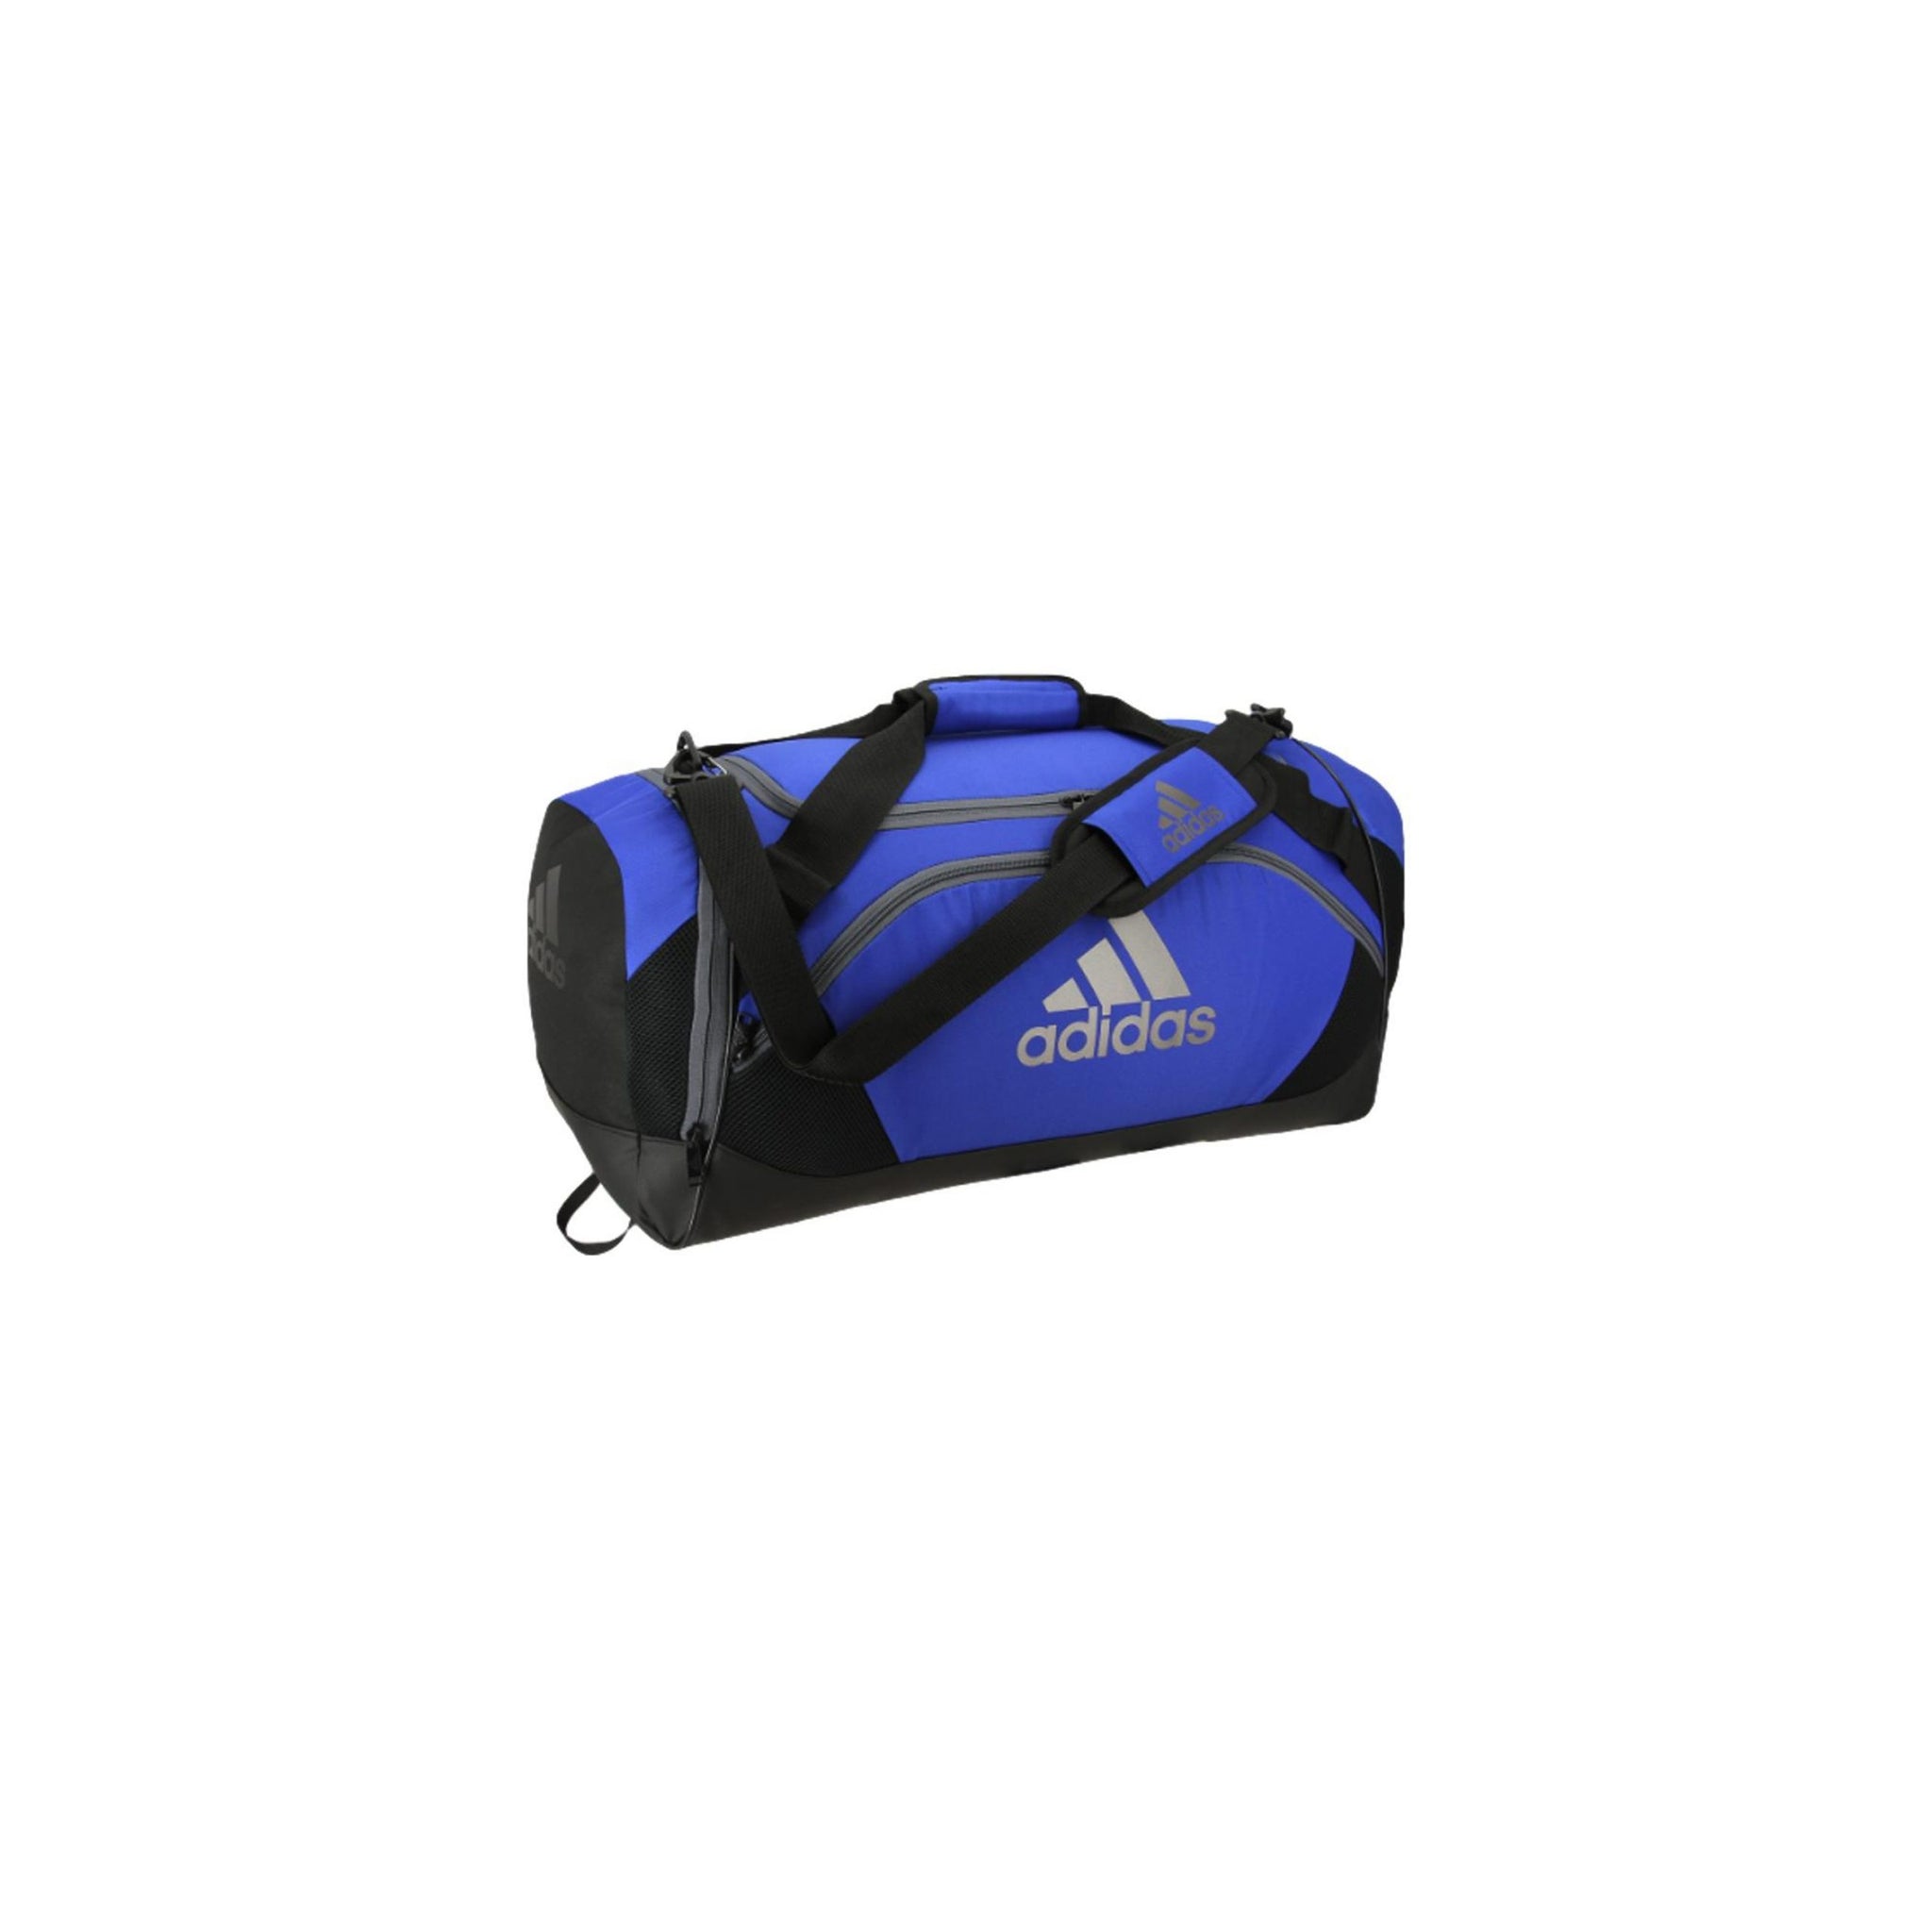 ADIDAS Team Issue II Small Duffel Bag